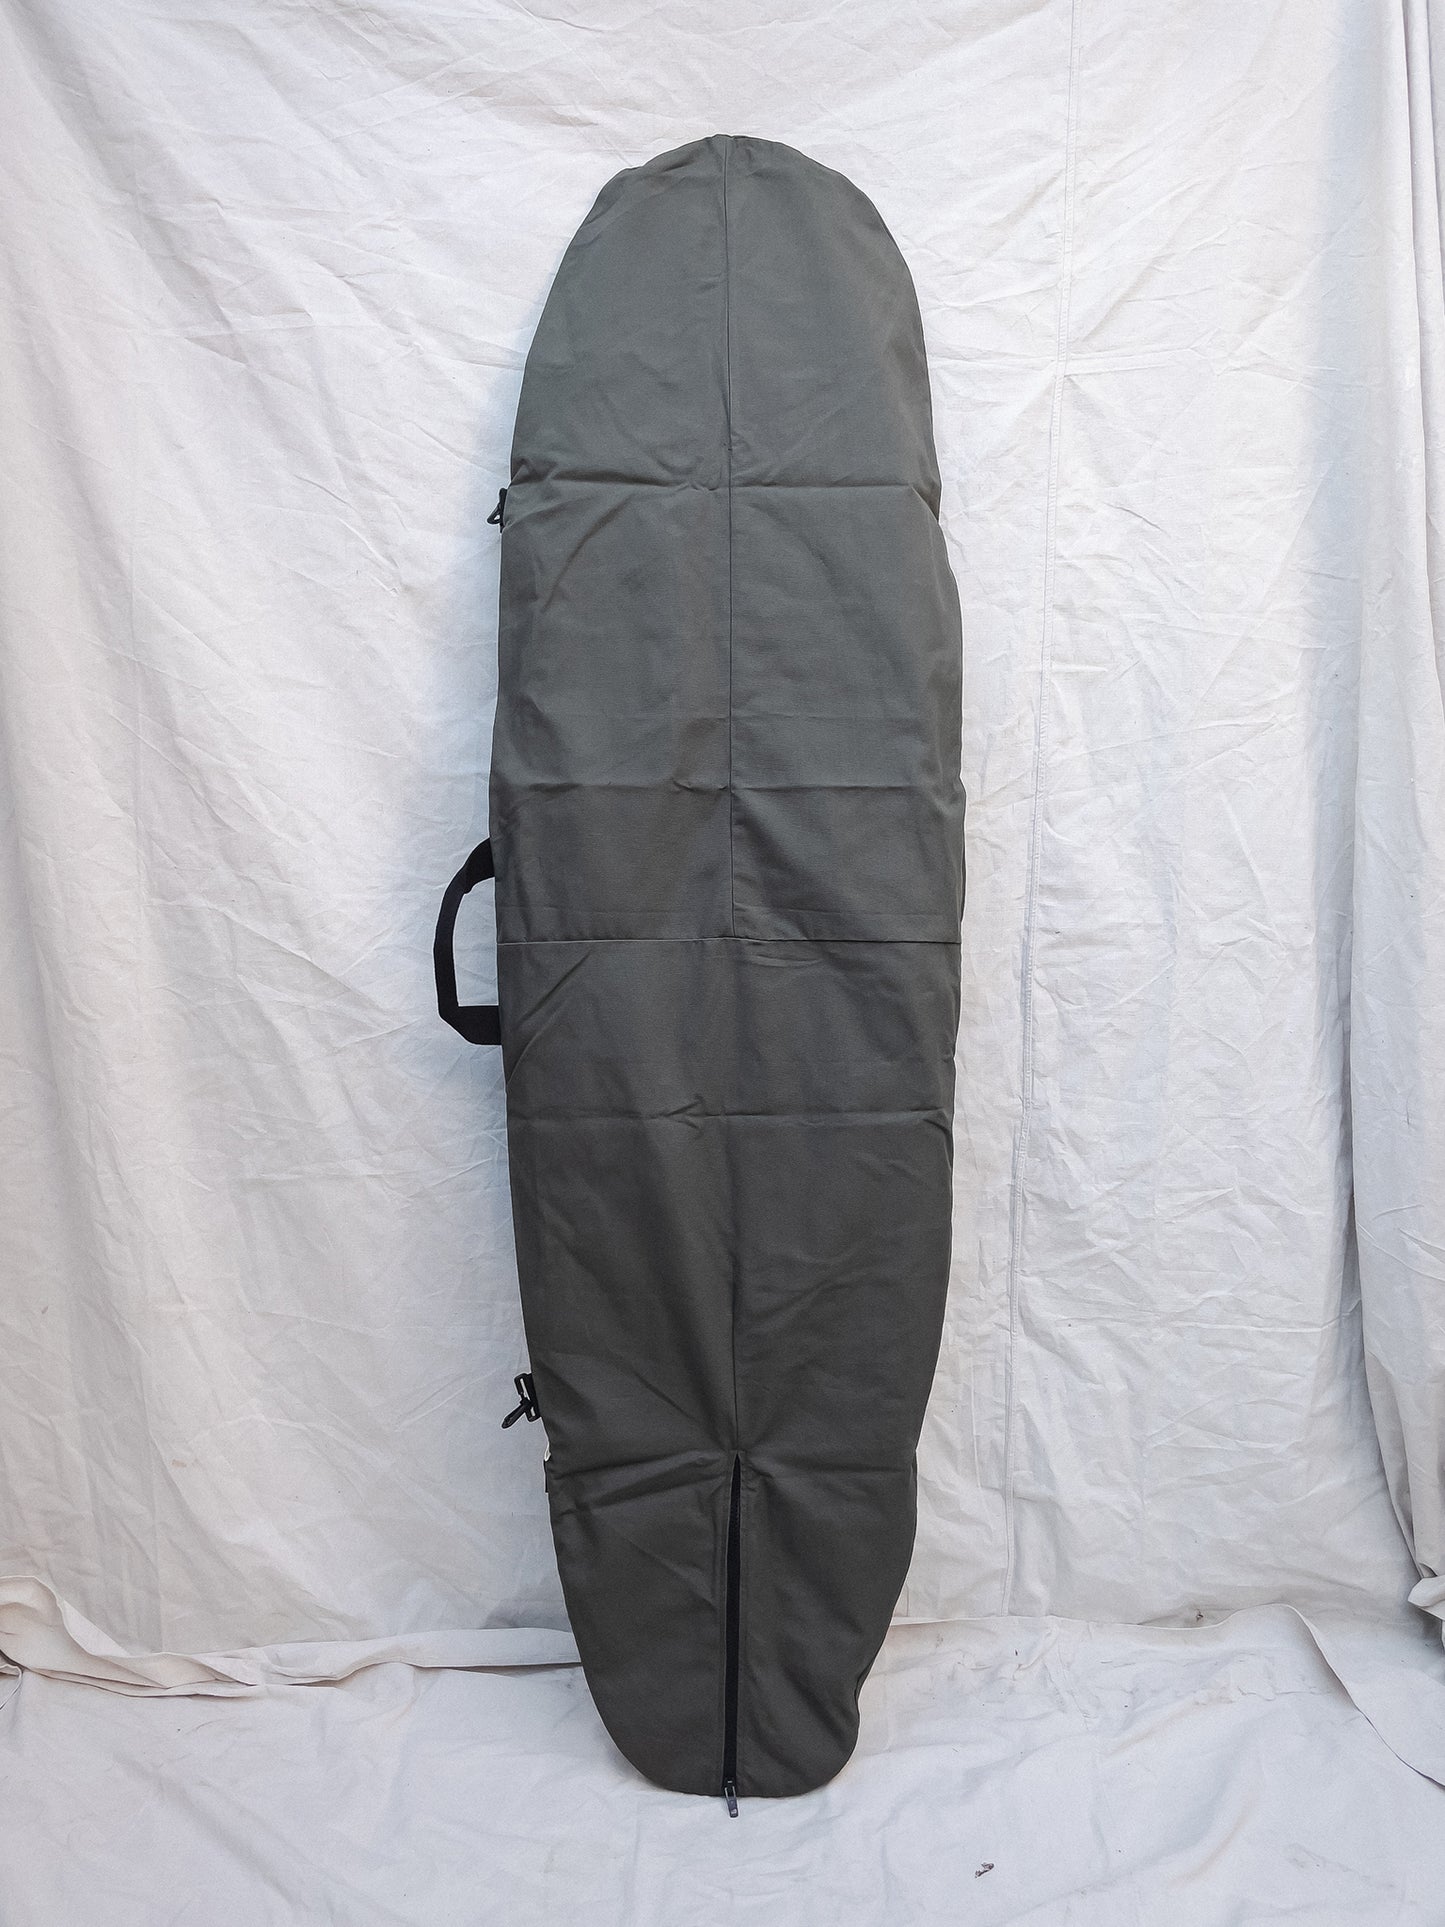 Olive Board Bag - 7’